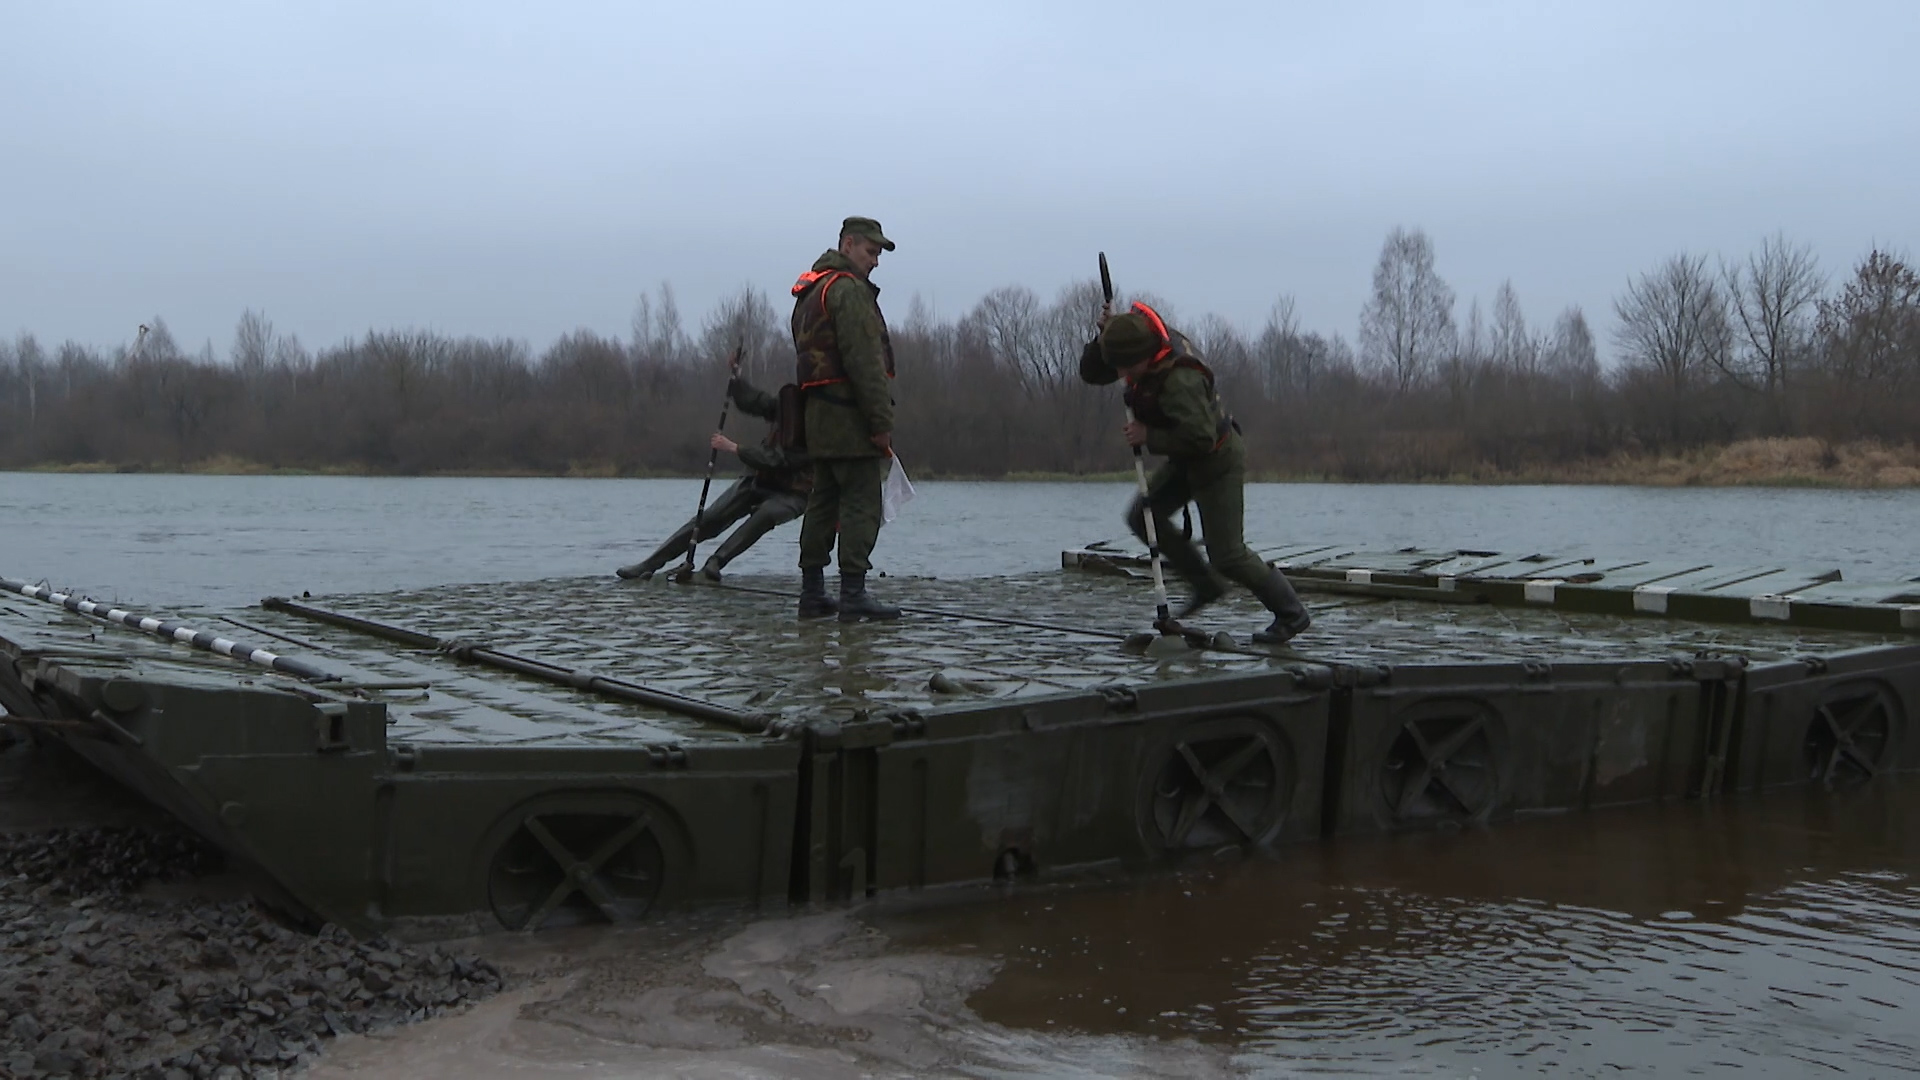 переправа через реку военные